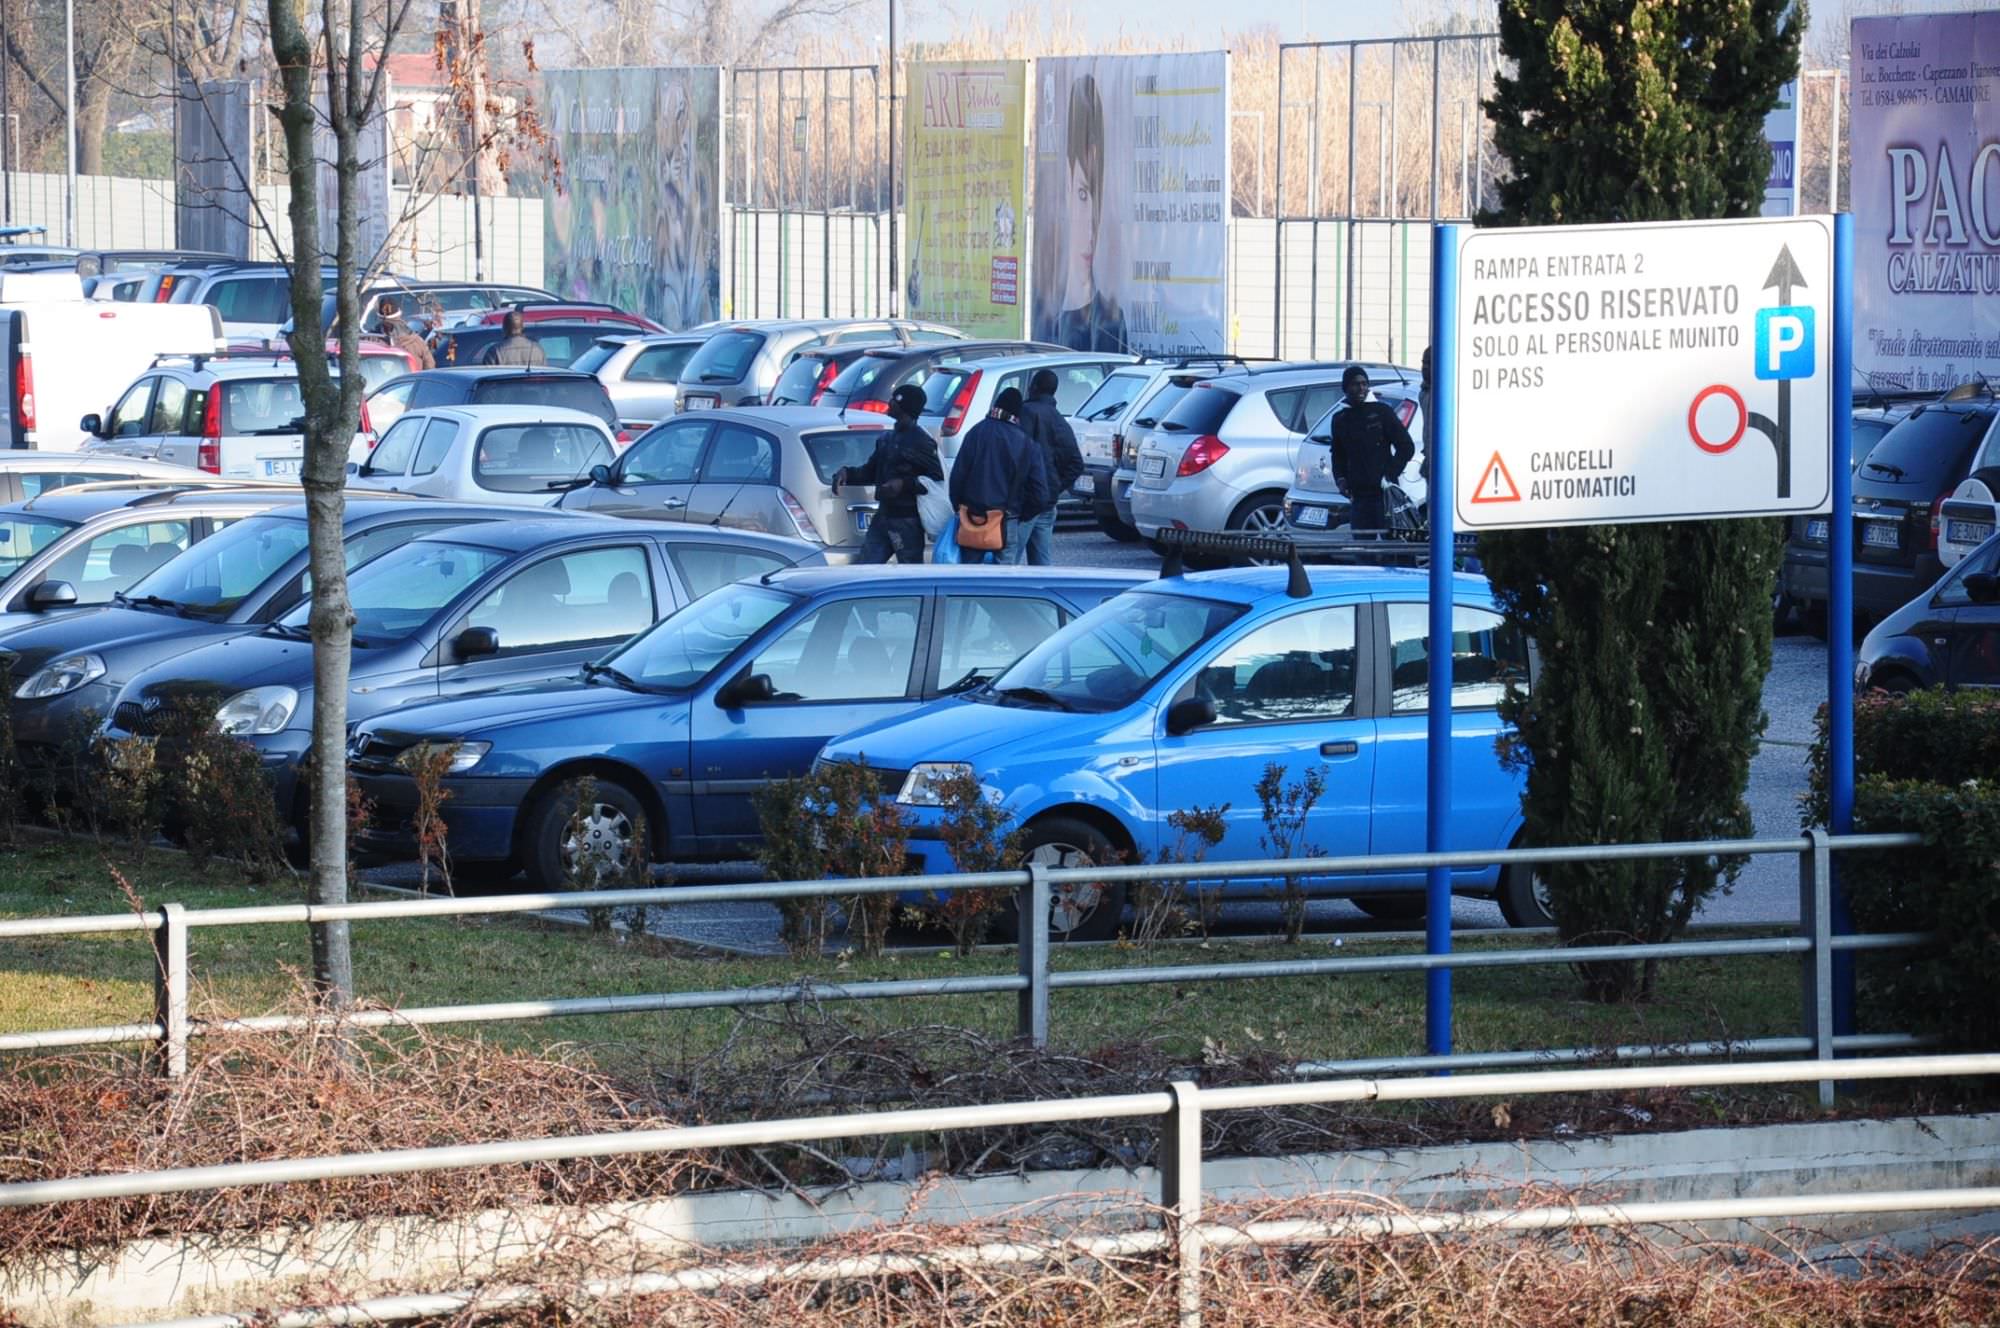 “Le autorità intervengano per contrastare gli abusivi al parcheggio dell’ospedale Versilia”